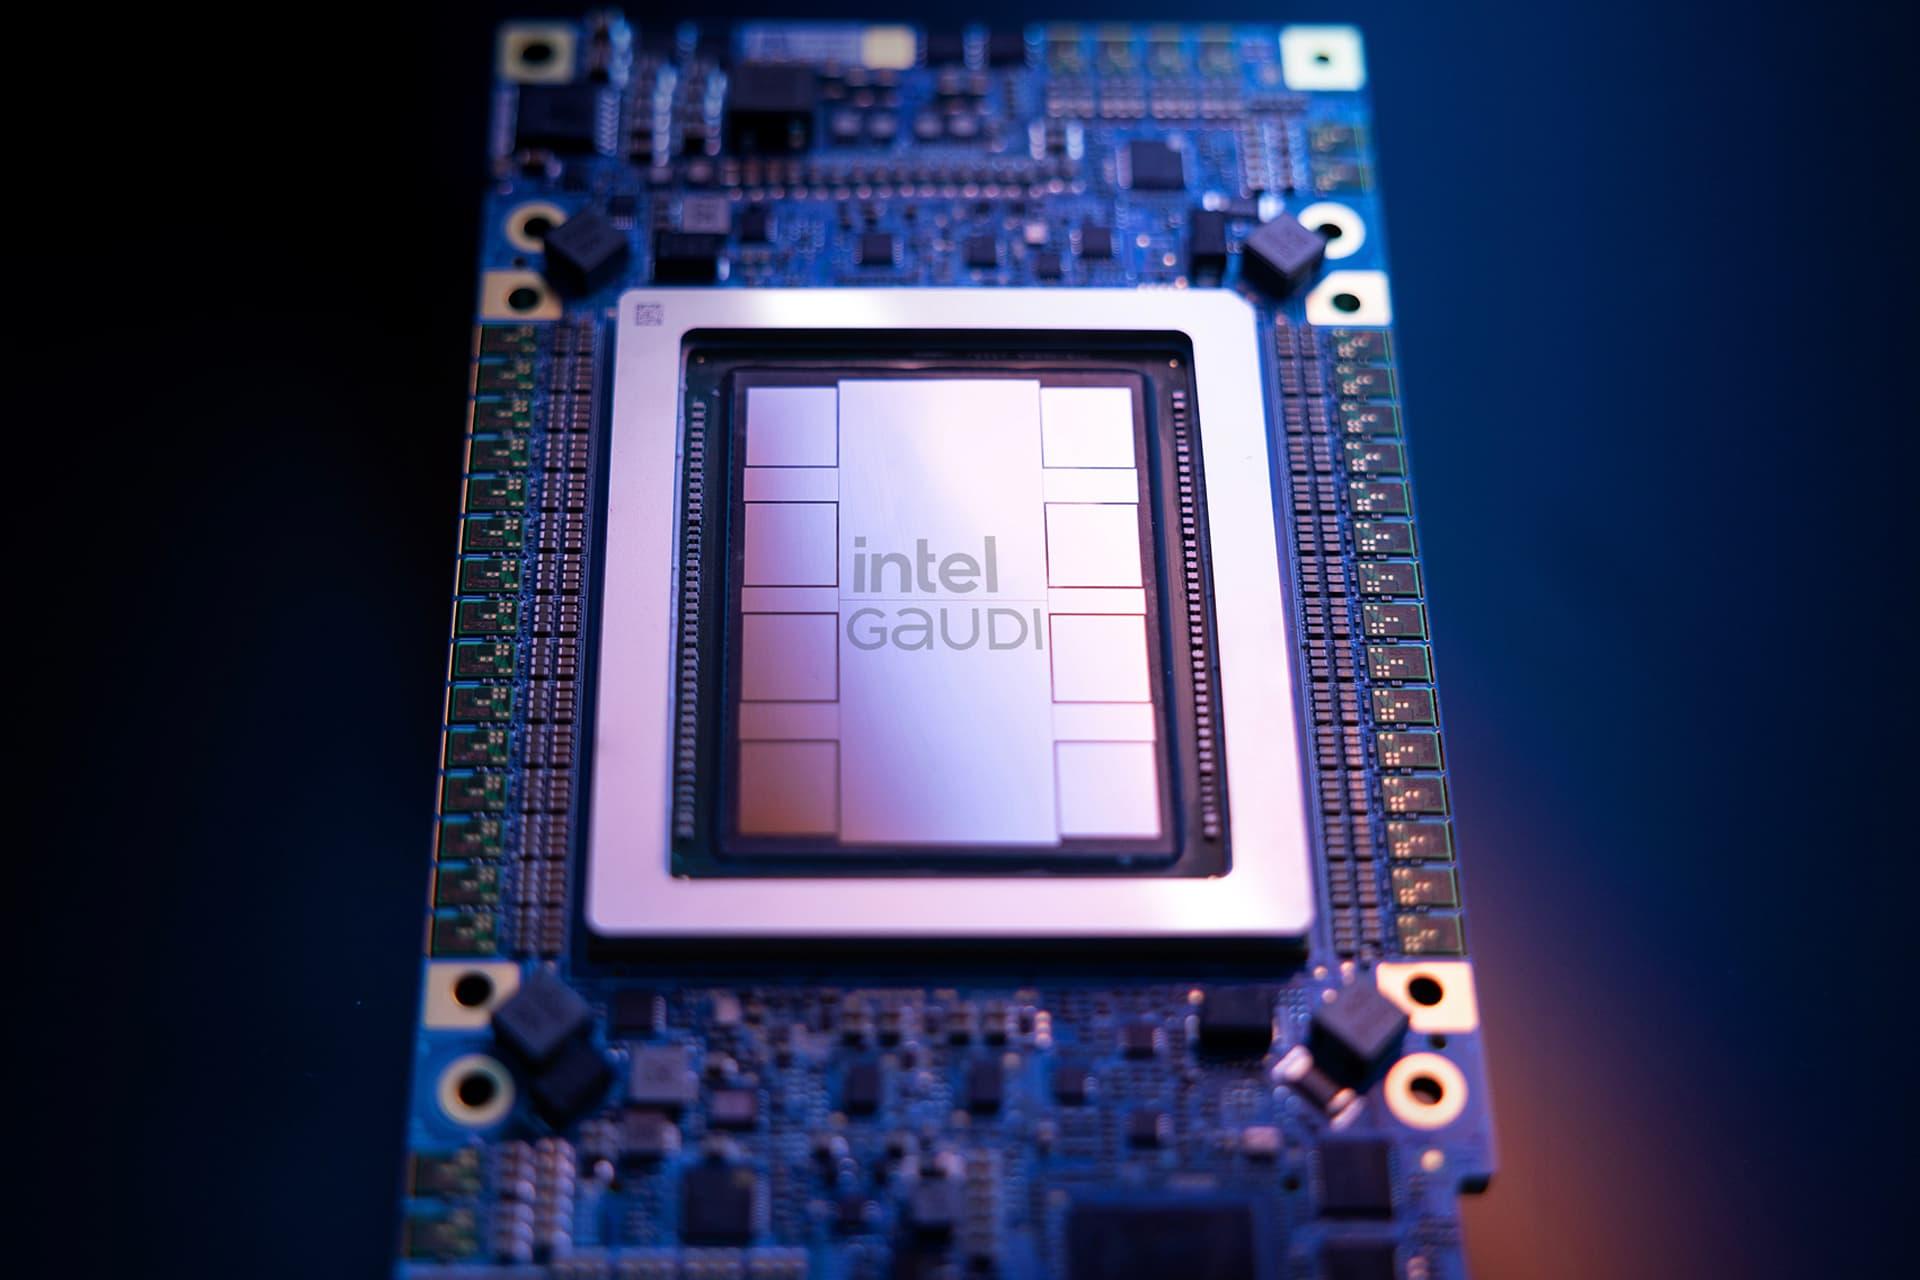 پردازنده هوش مصنوعی Intel Gaudi از نمای جلو